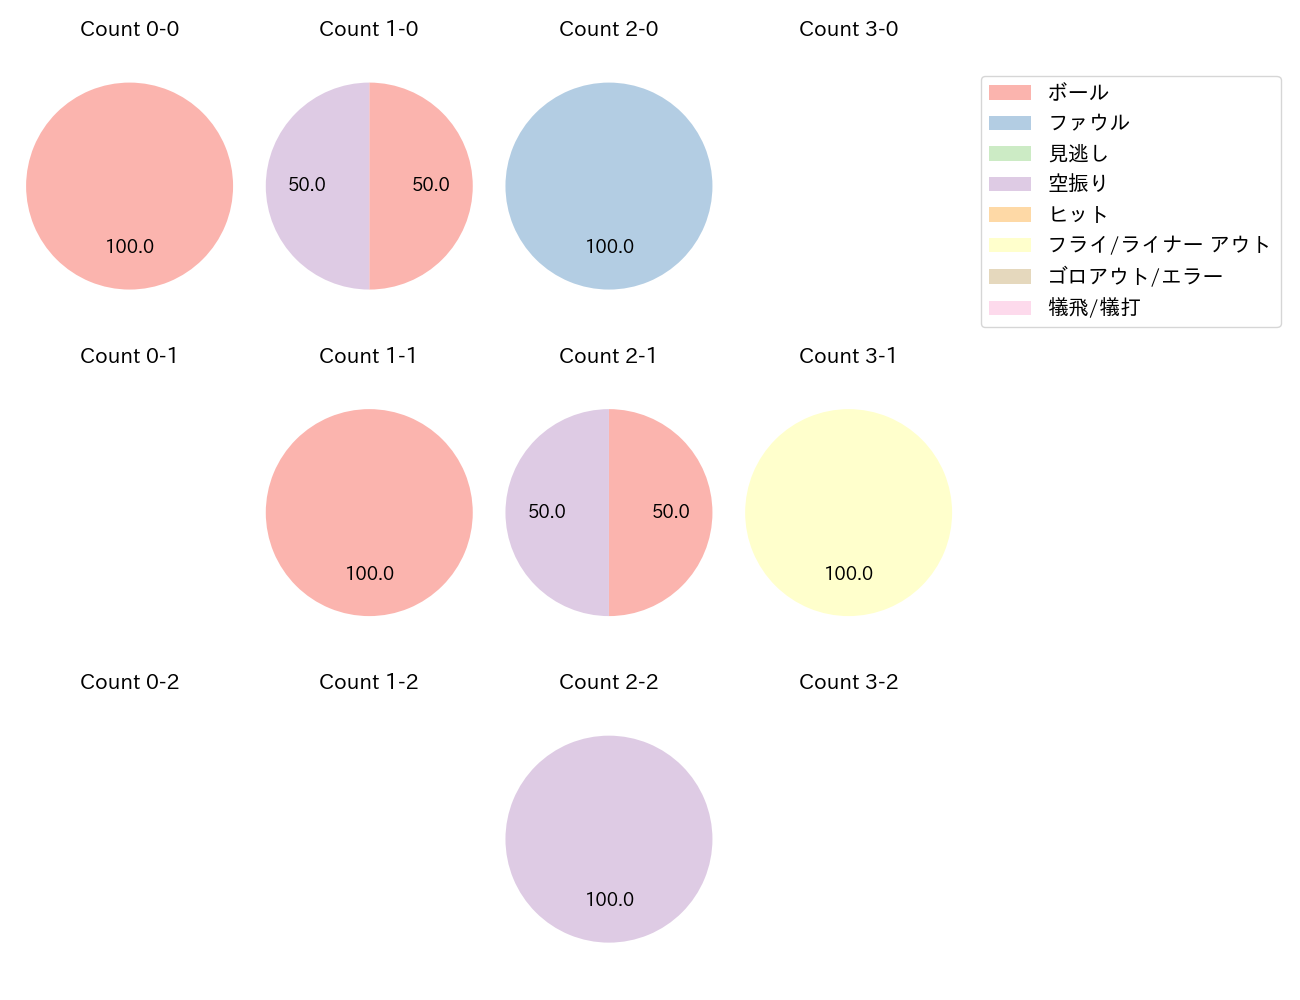 和田 康士朗の球数分布(2022年7月)